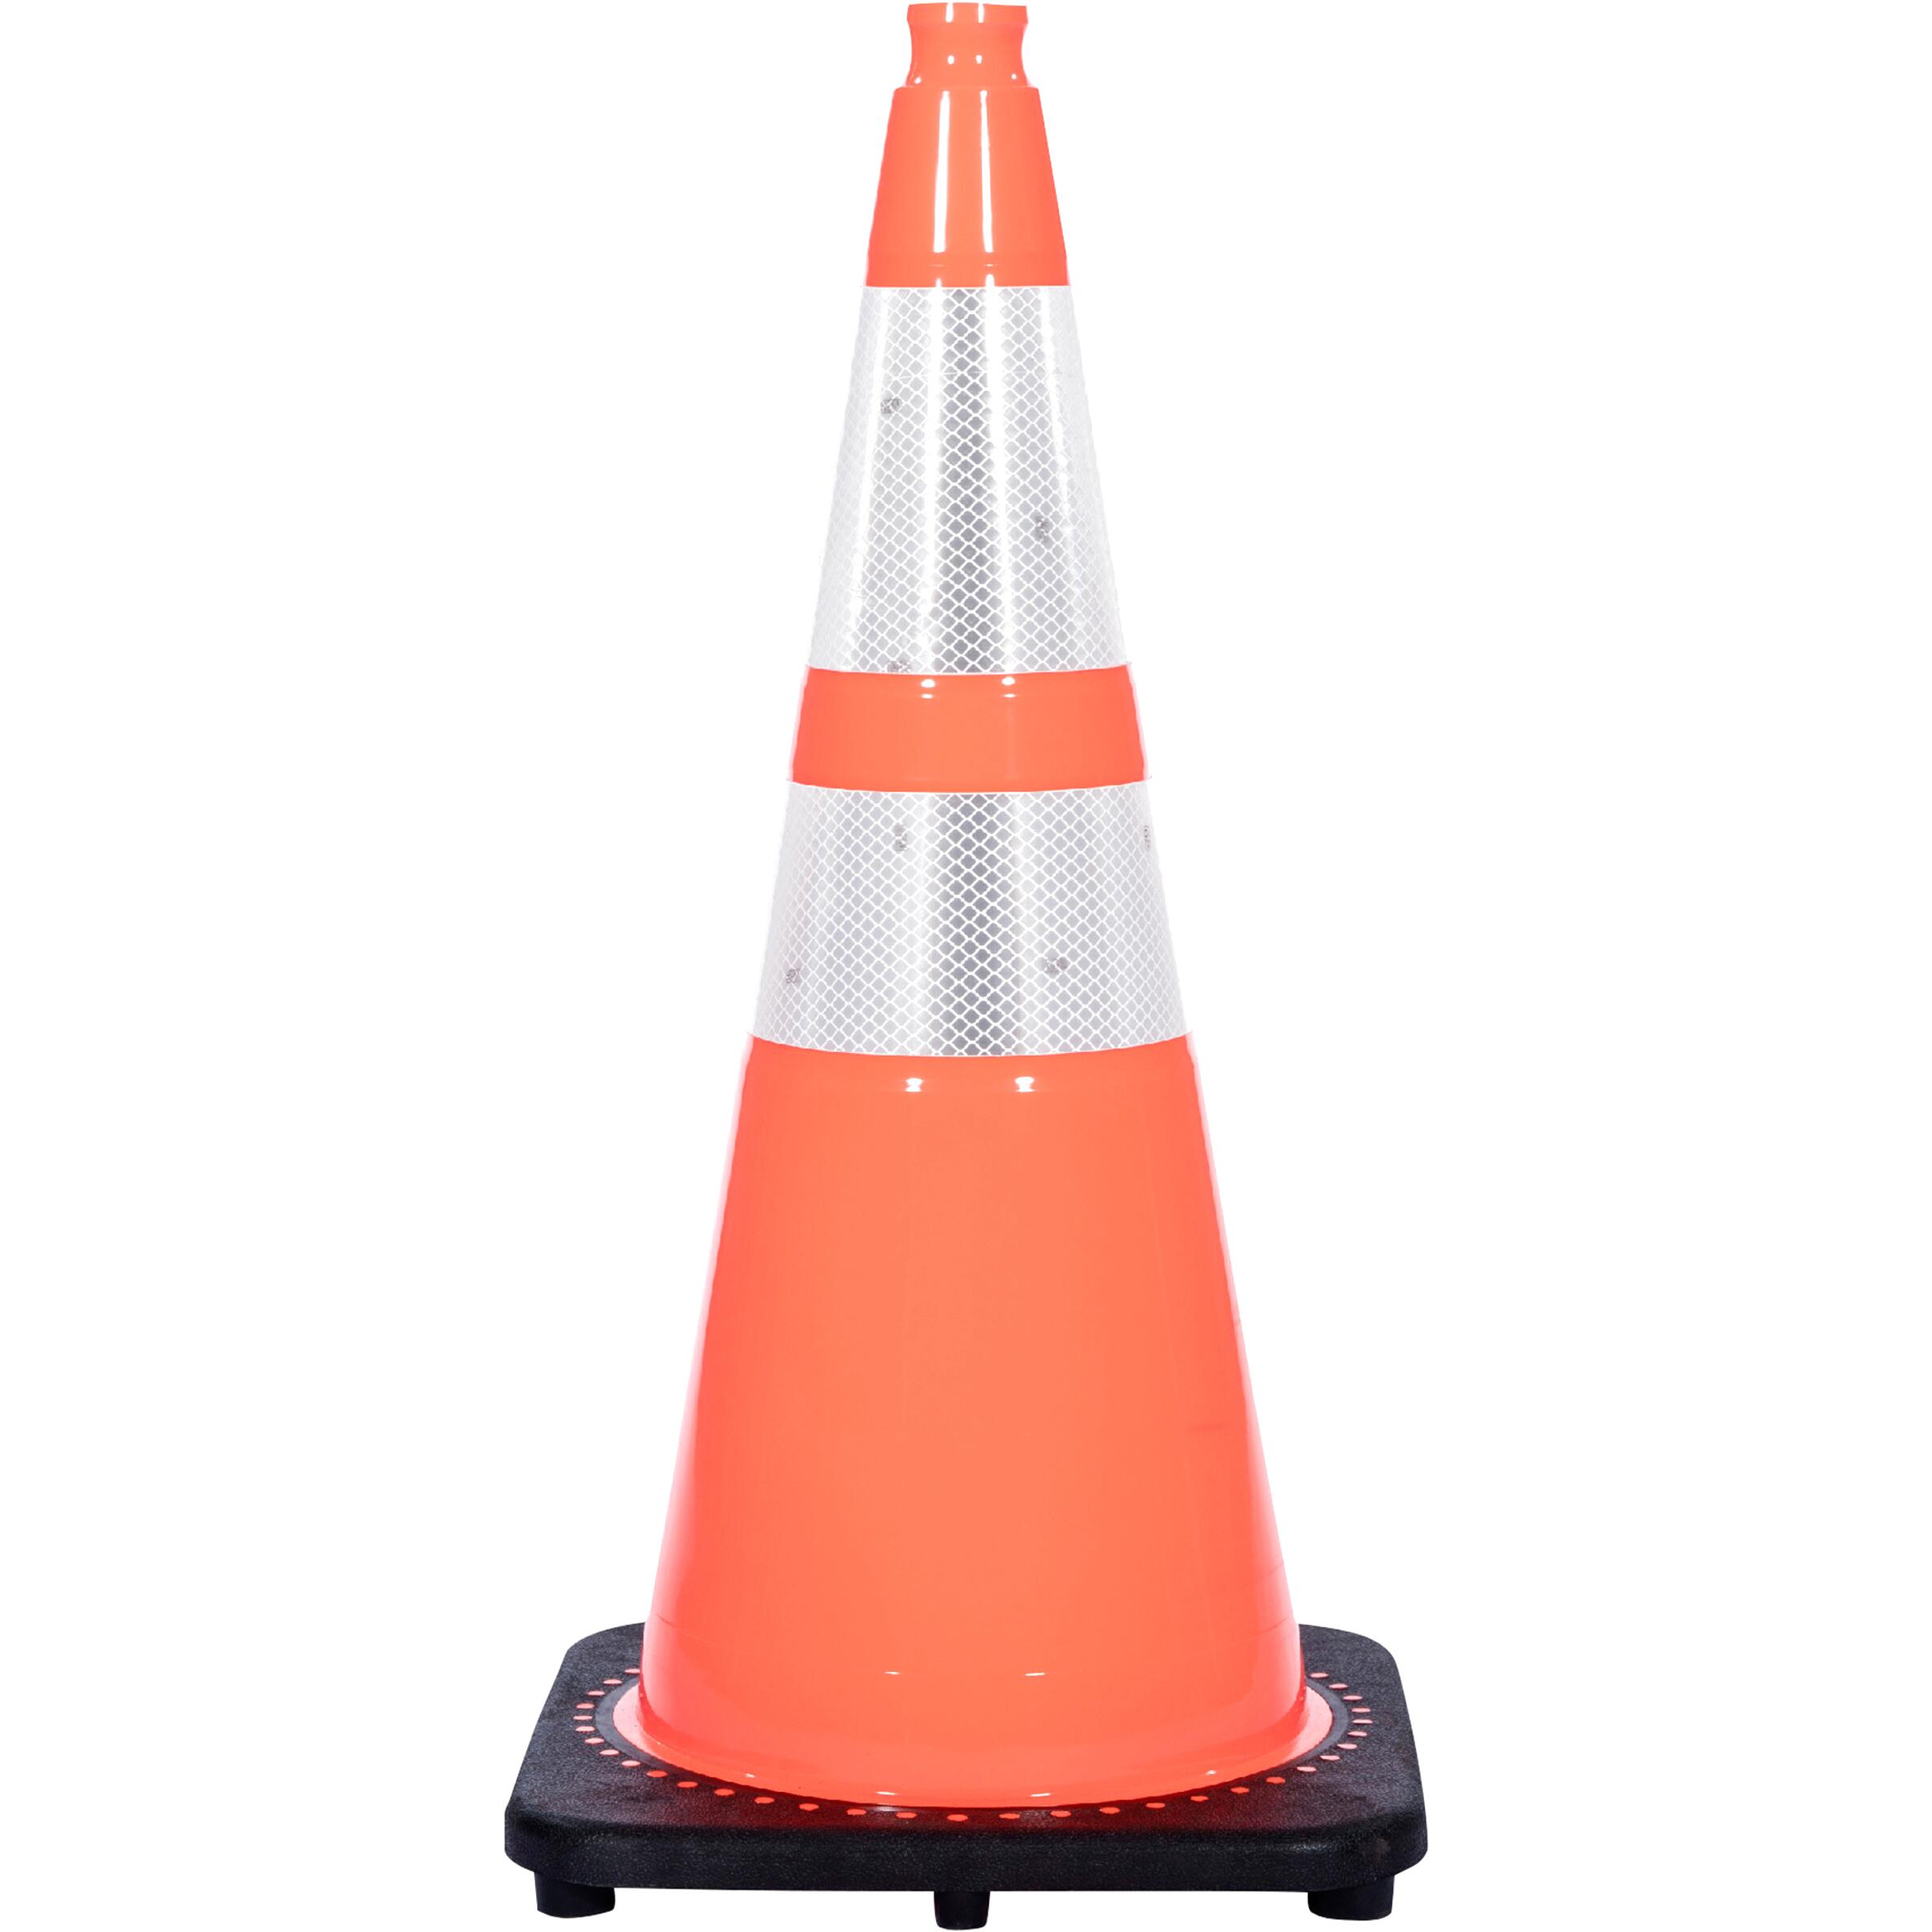 Used traffic cones